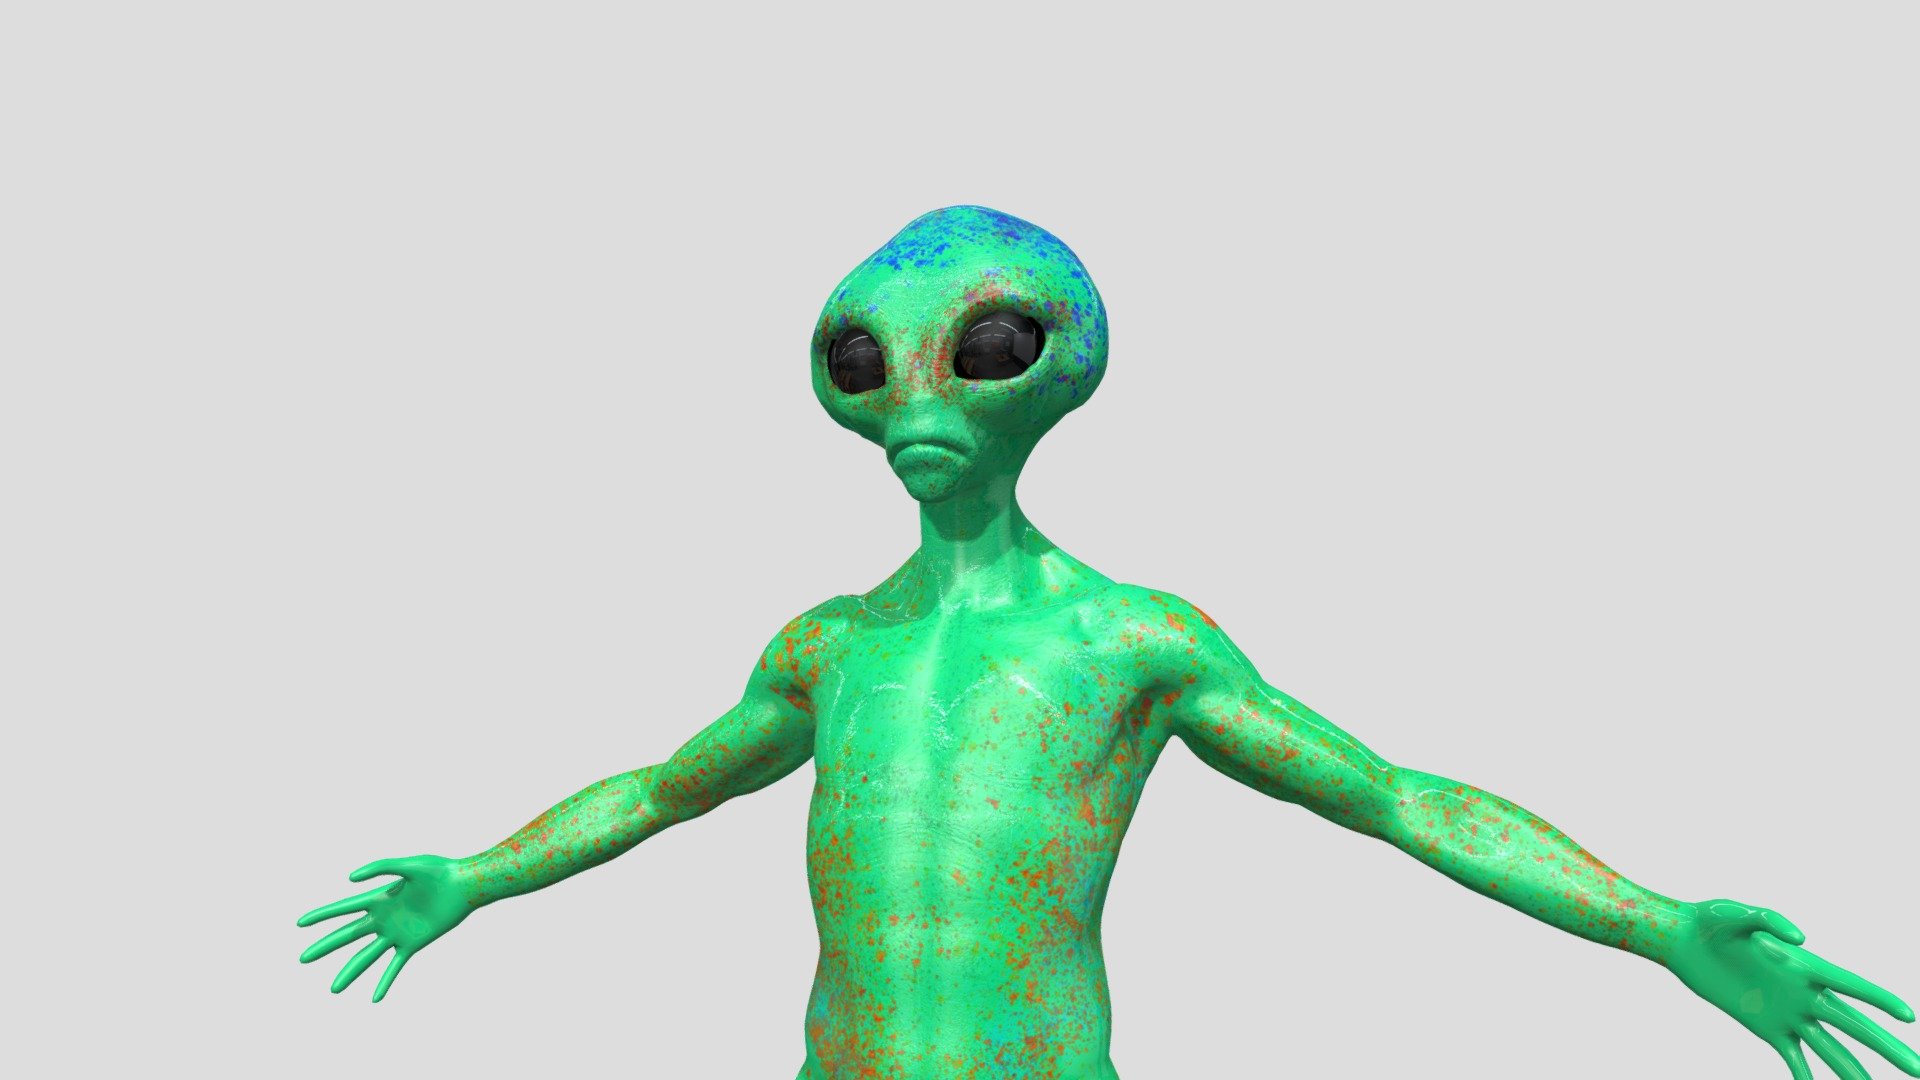 enjoy my alien!!! - Alien - Download Free 3D model by sigifredo.valencia.ensinales 3d model